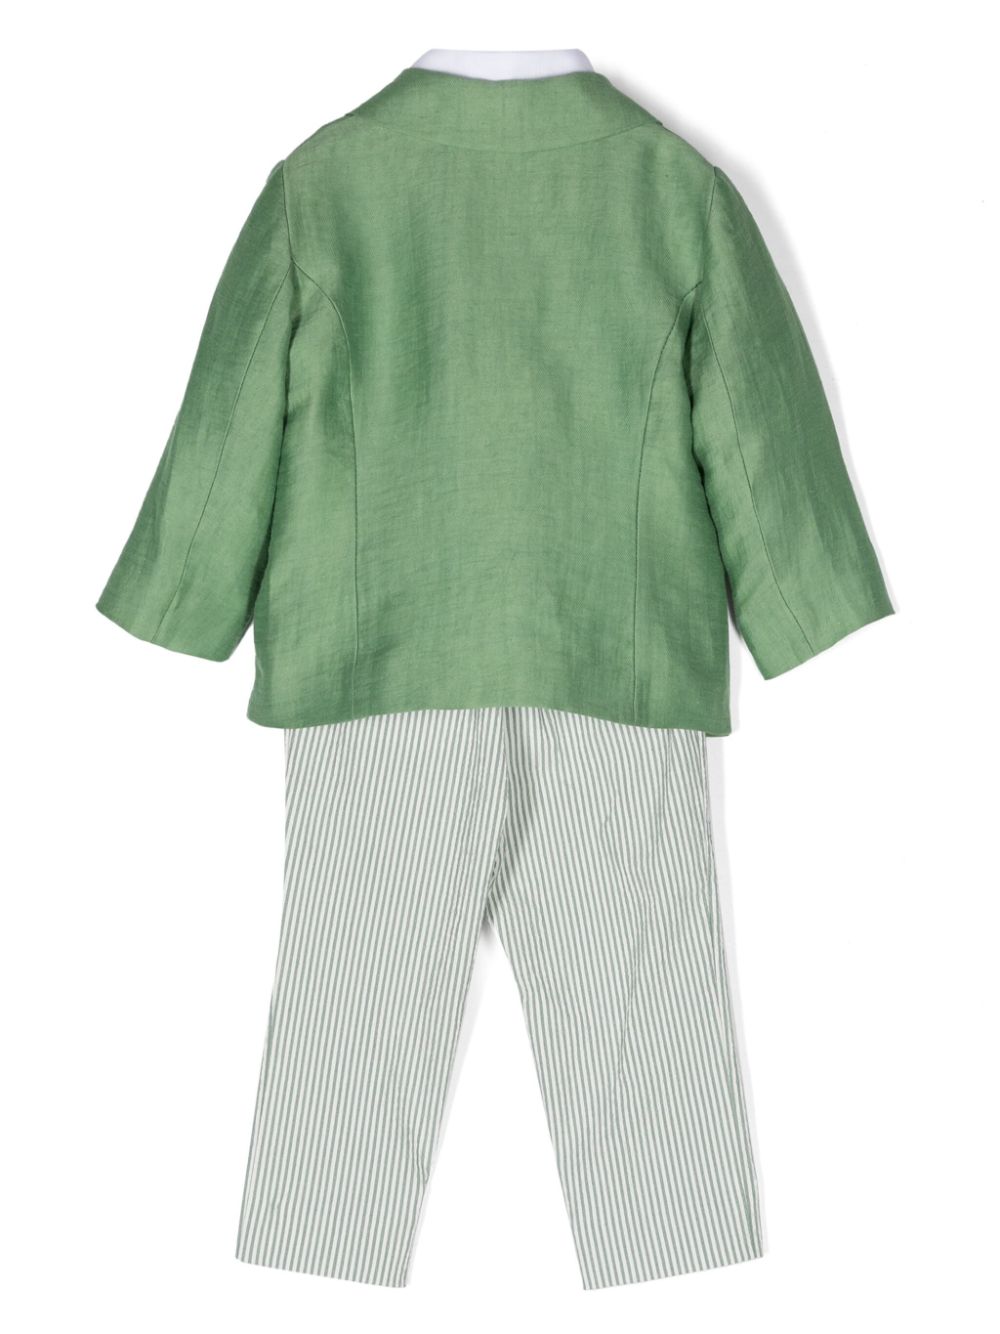 Completo elegante verde e bianco per neonato